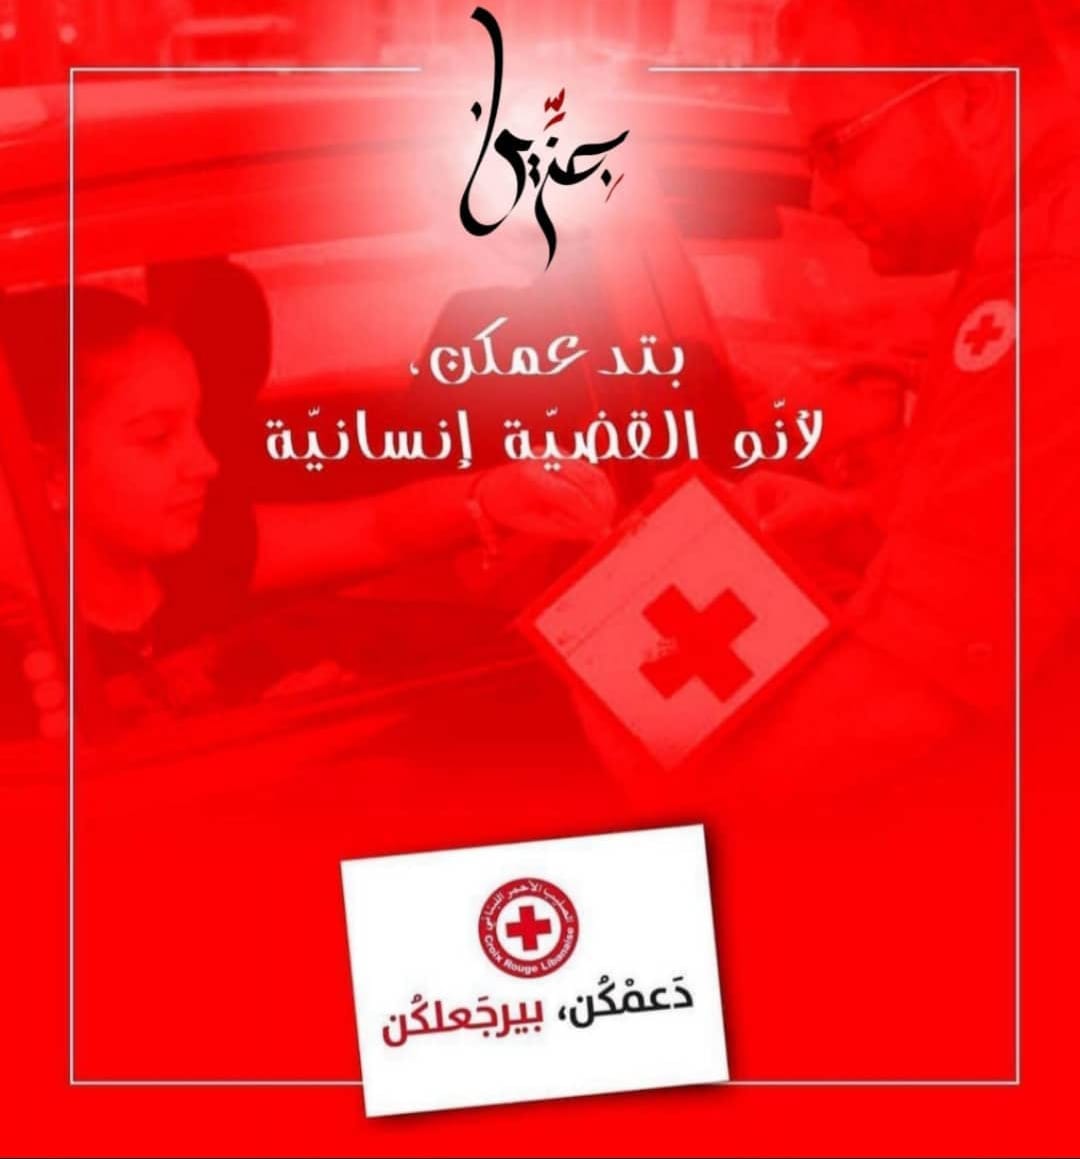 تيضل حدكم ويعطي أكتر ساهموا ولو بفلس الأرملة... الصليب الأحمر اللبناني